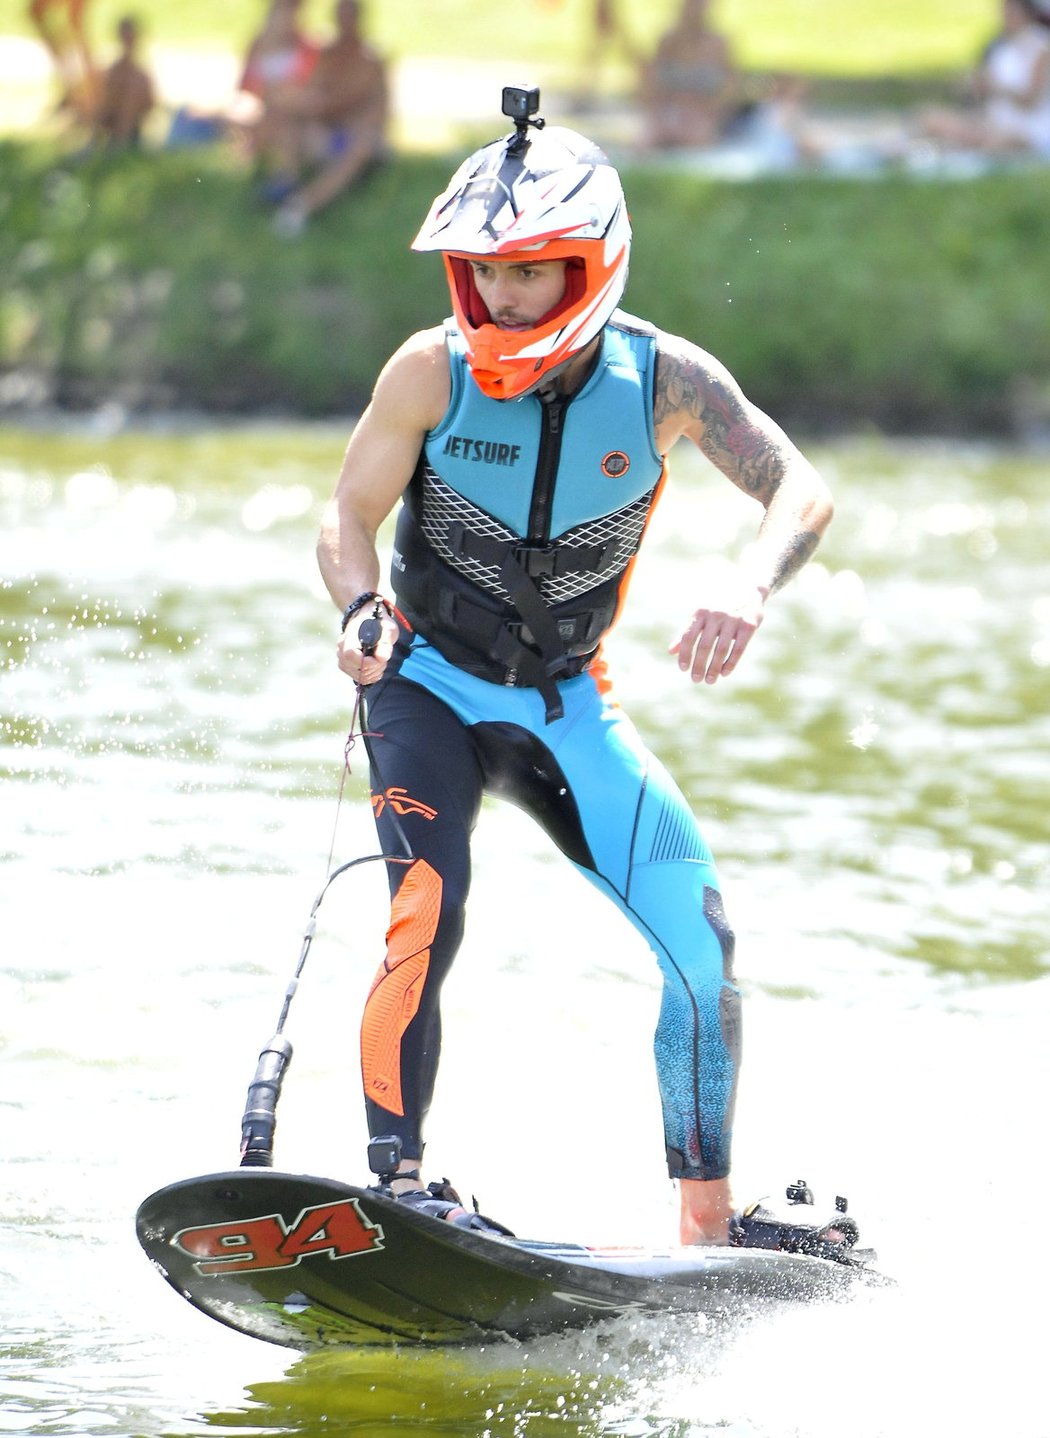 Jezdci, kteří se zúčastní Velké ceny Brna, si na místní přehradě vyzkoušeli surfování na motorovém prkně